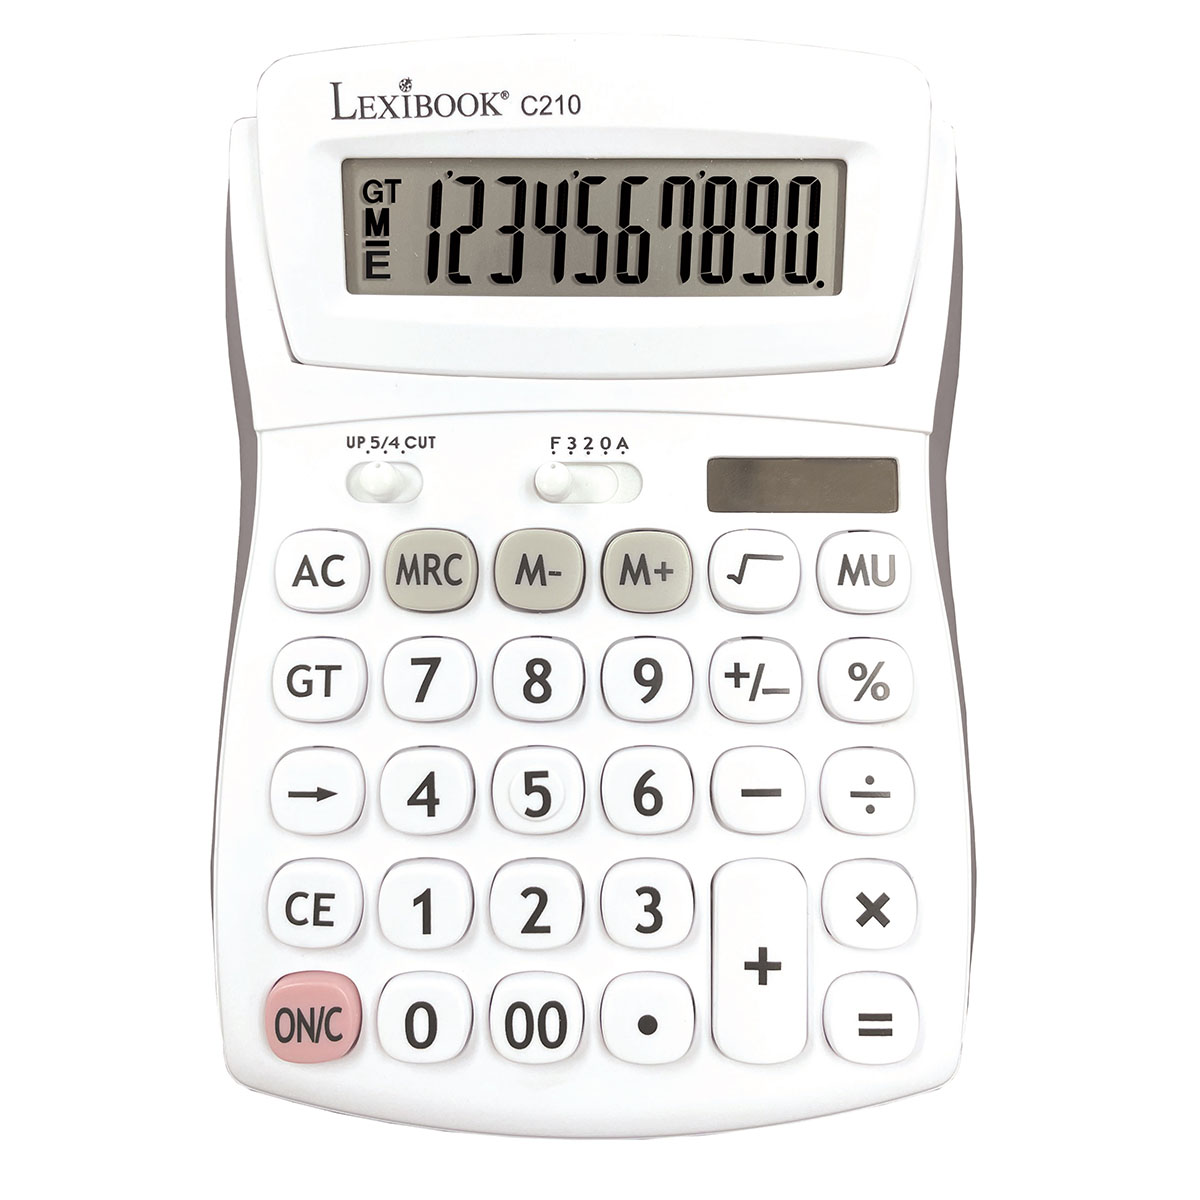 Petite calculatrice noire bureau scolaire sans pile